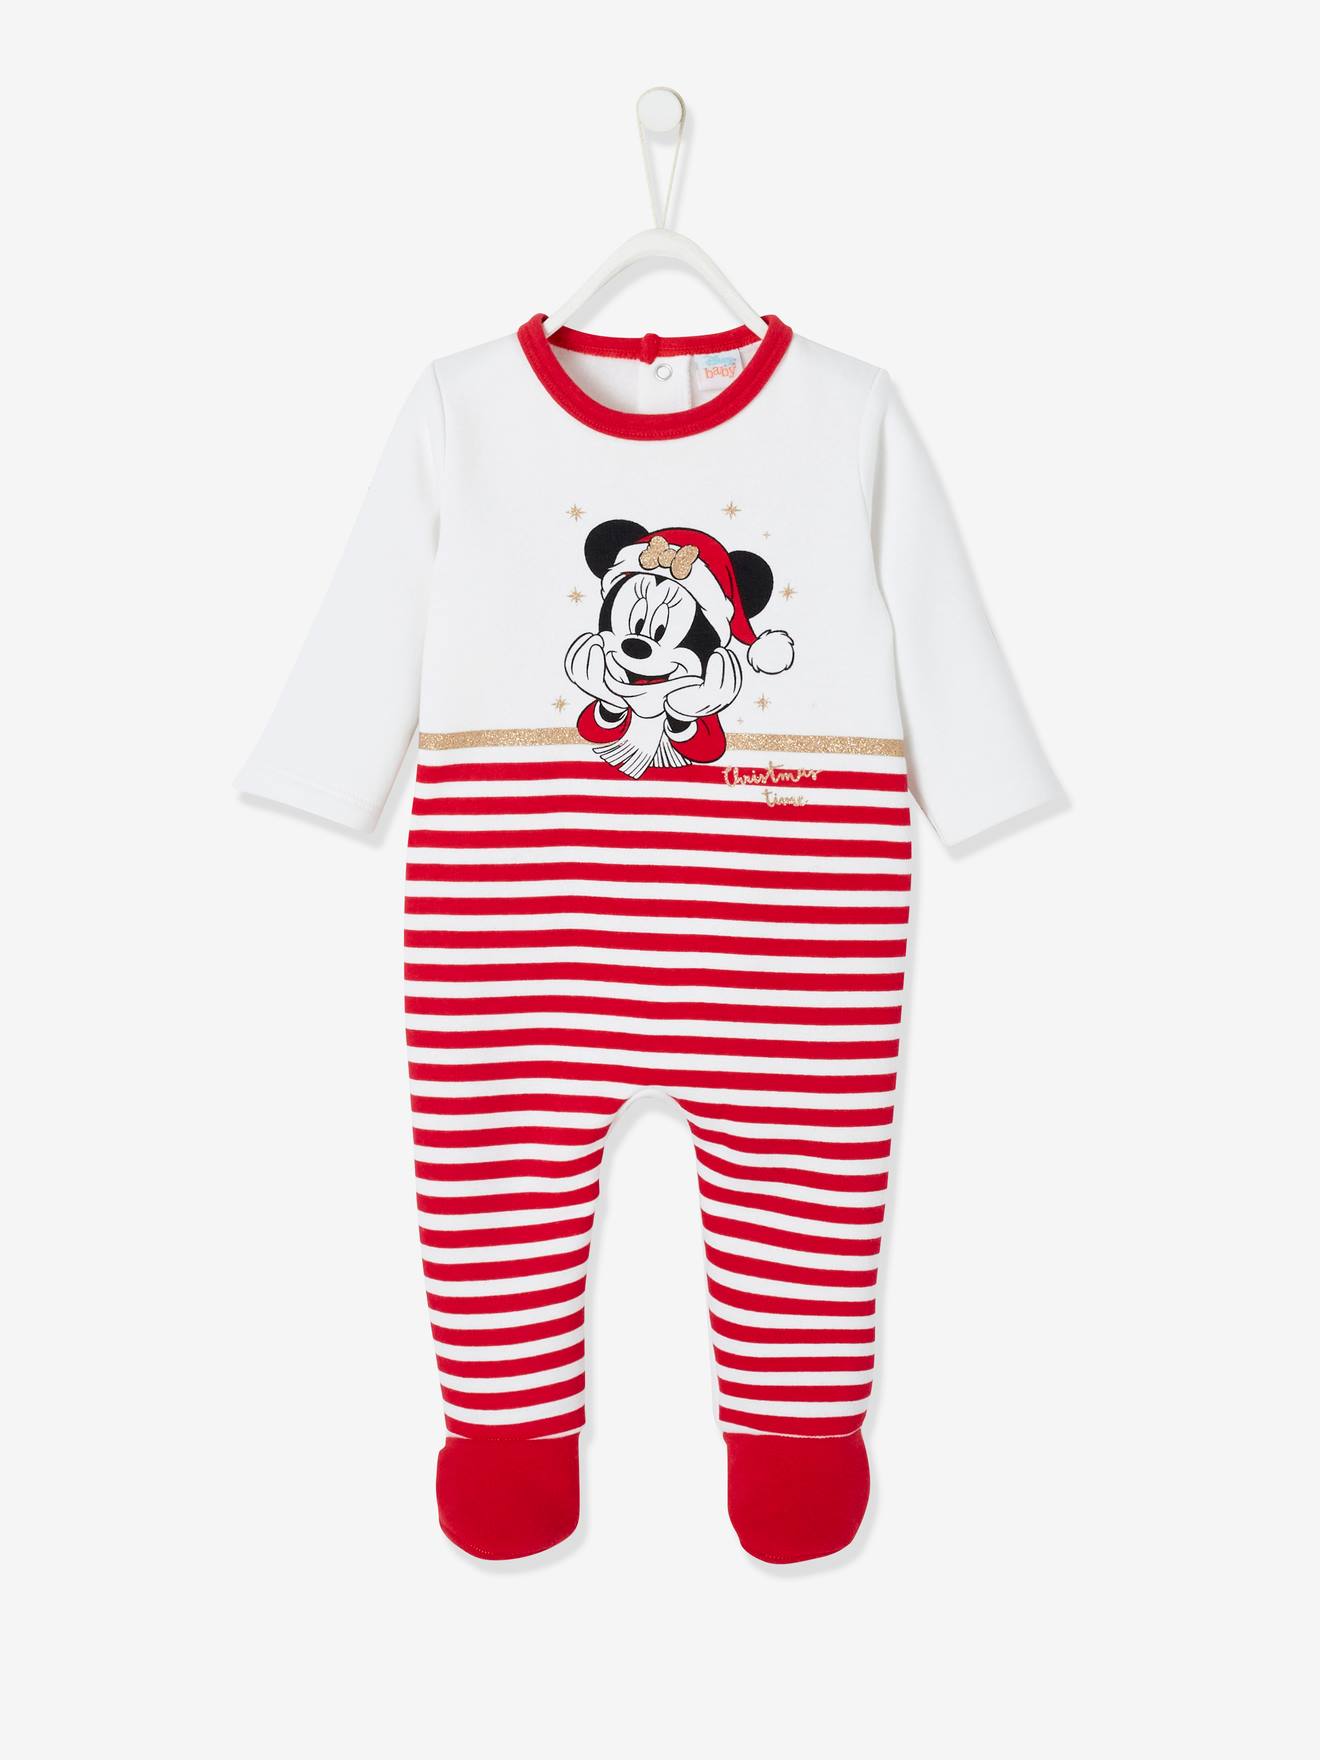 Girls Sleepsuit Disney Minnie Mouse Stripe Babygro Newborn Baby to 18 Months 